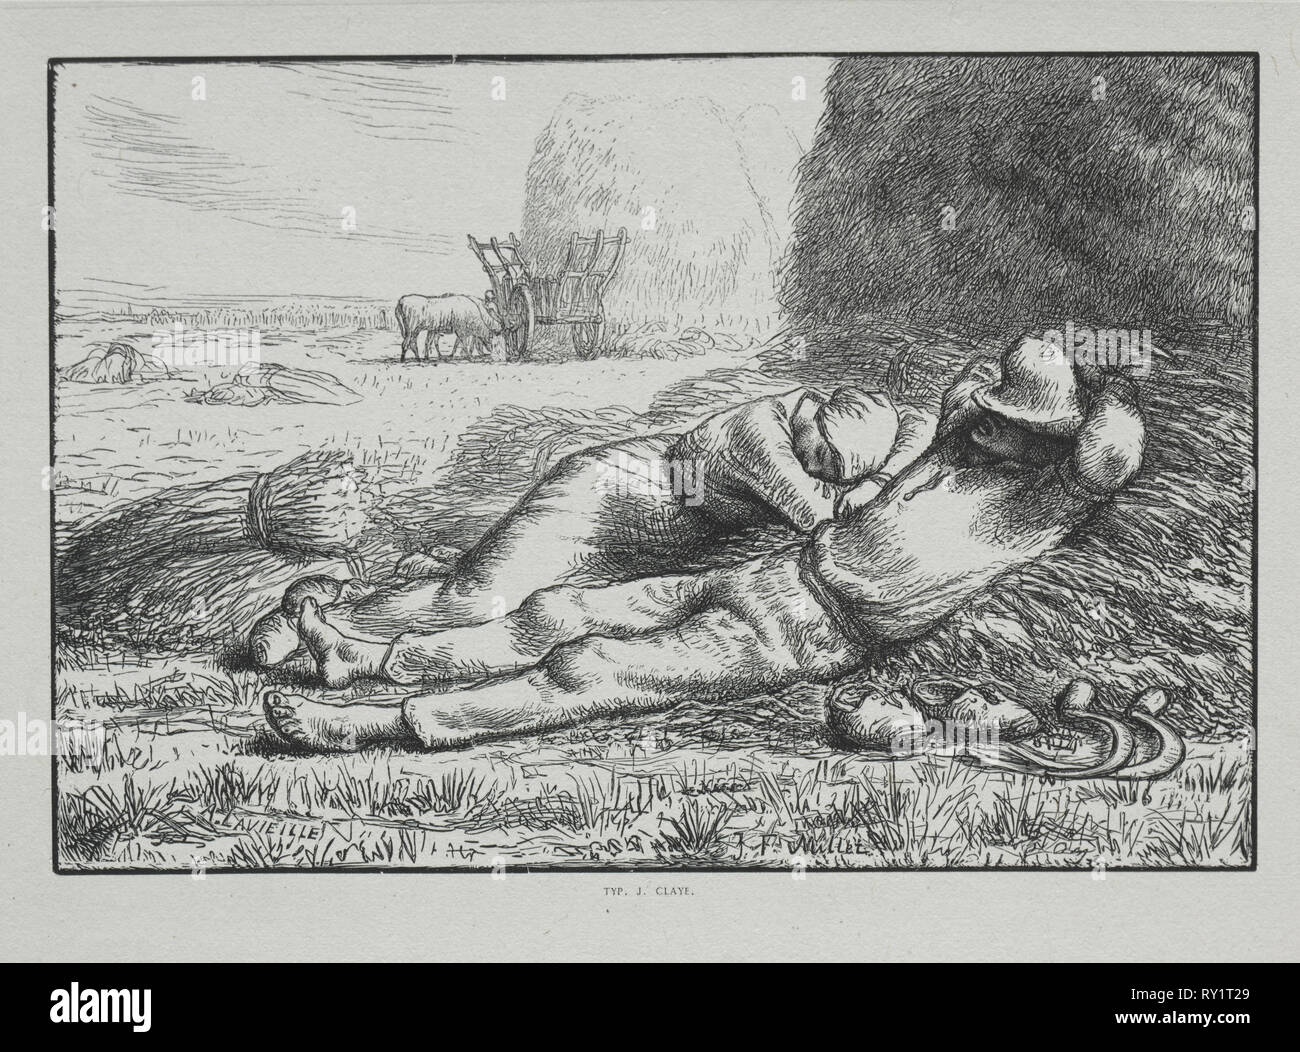 Quatre heures de la Journée : 12 h, 1860. Adrien Lavieille (Français, 1818-1862). La gravure sur bois Banque D'Images